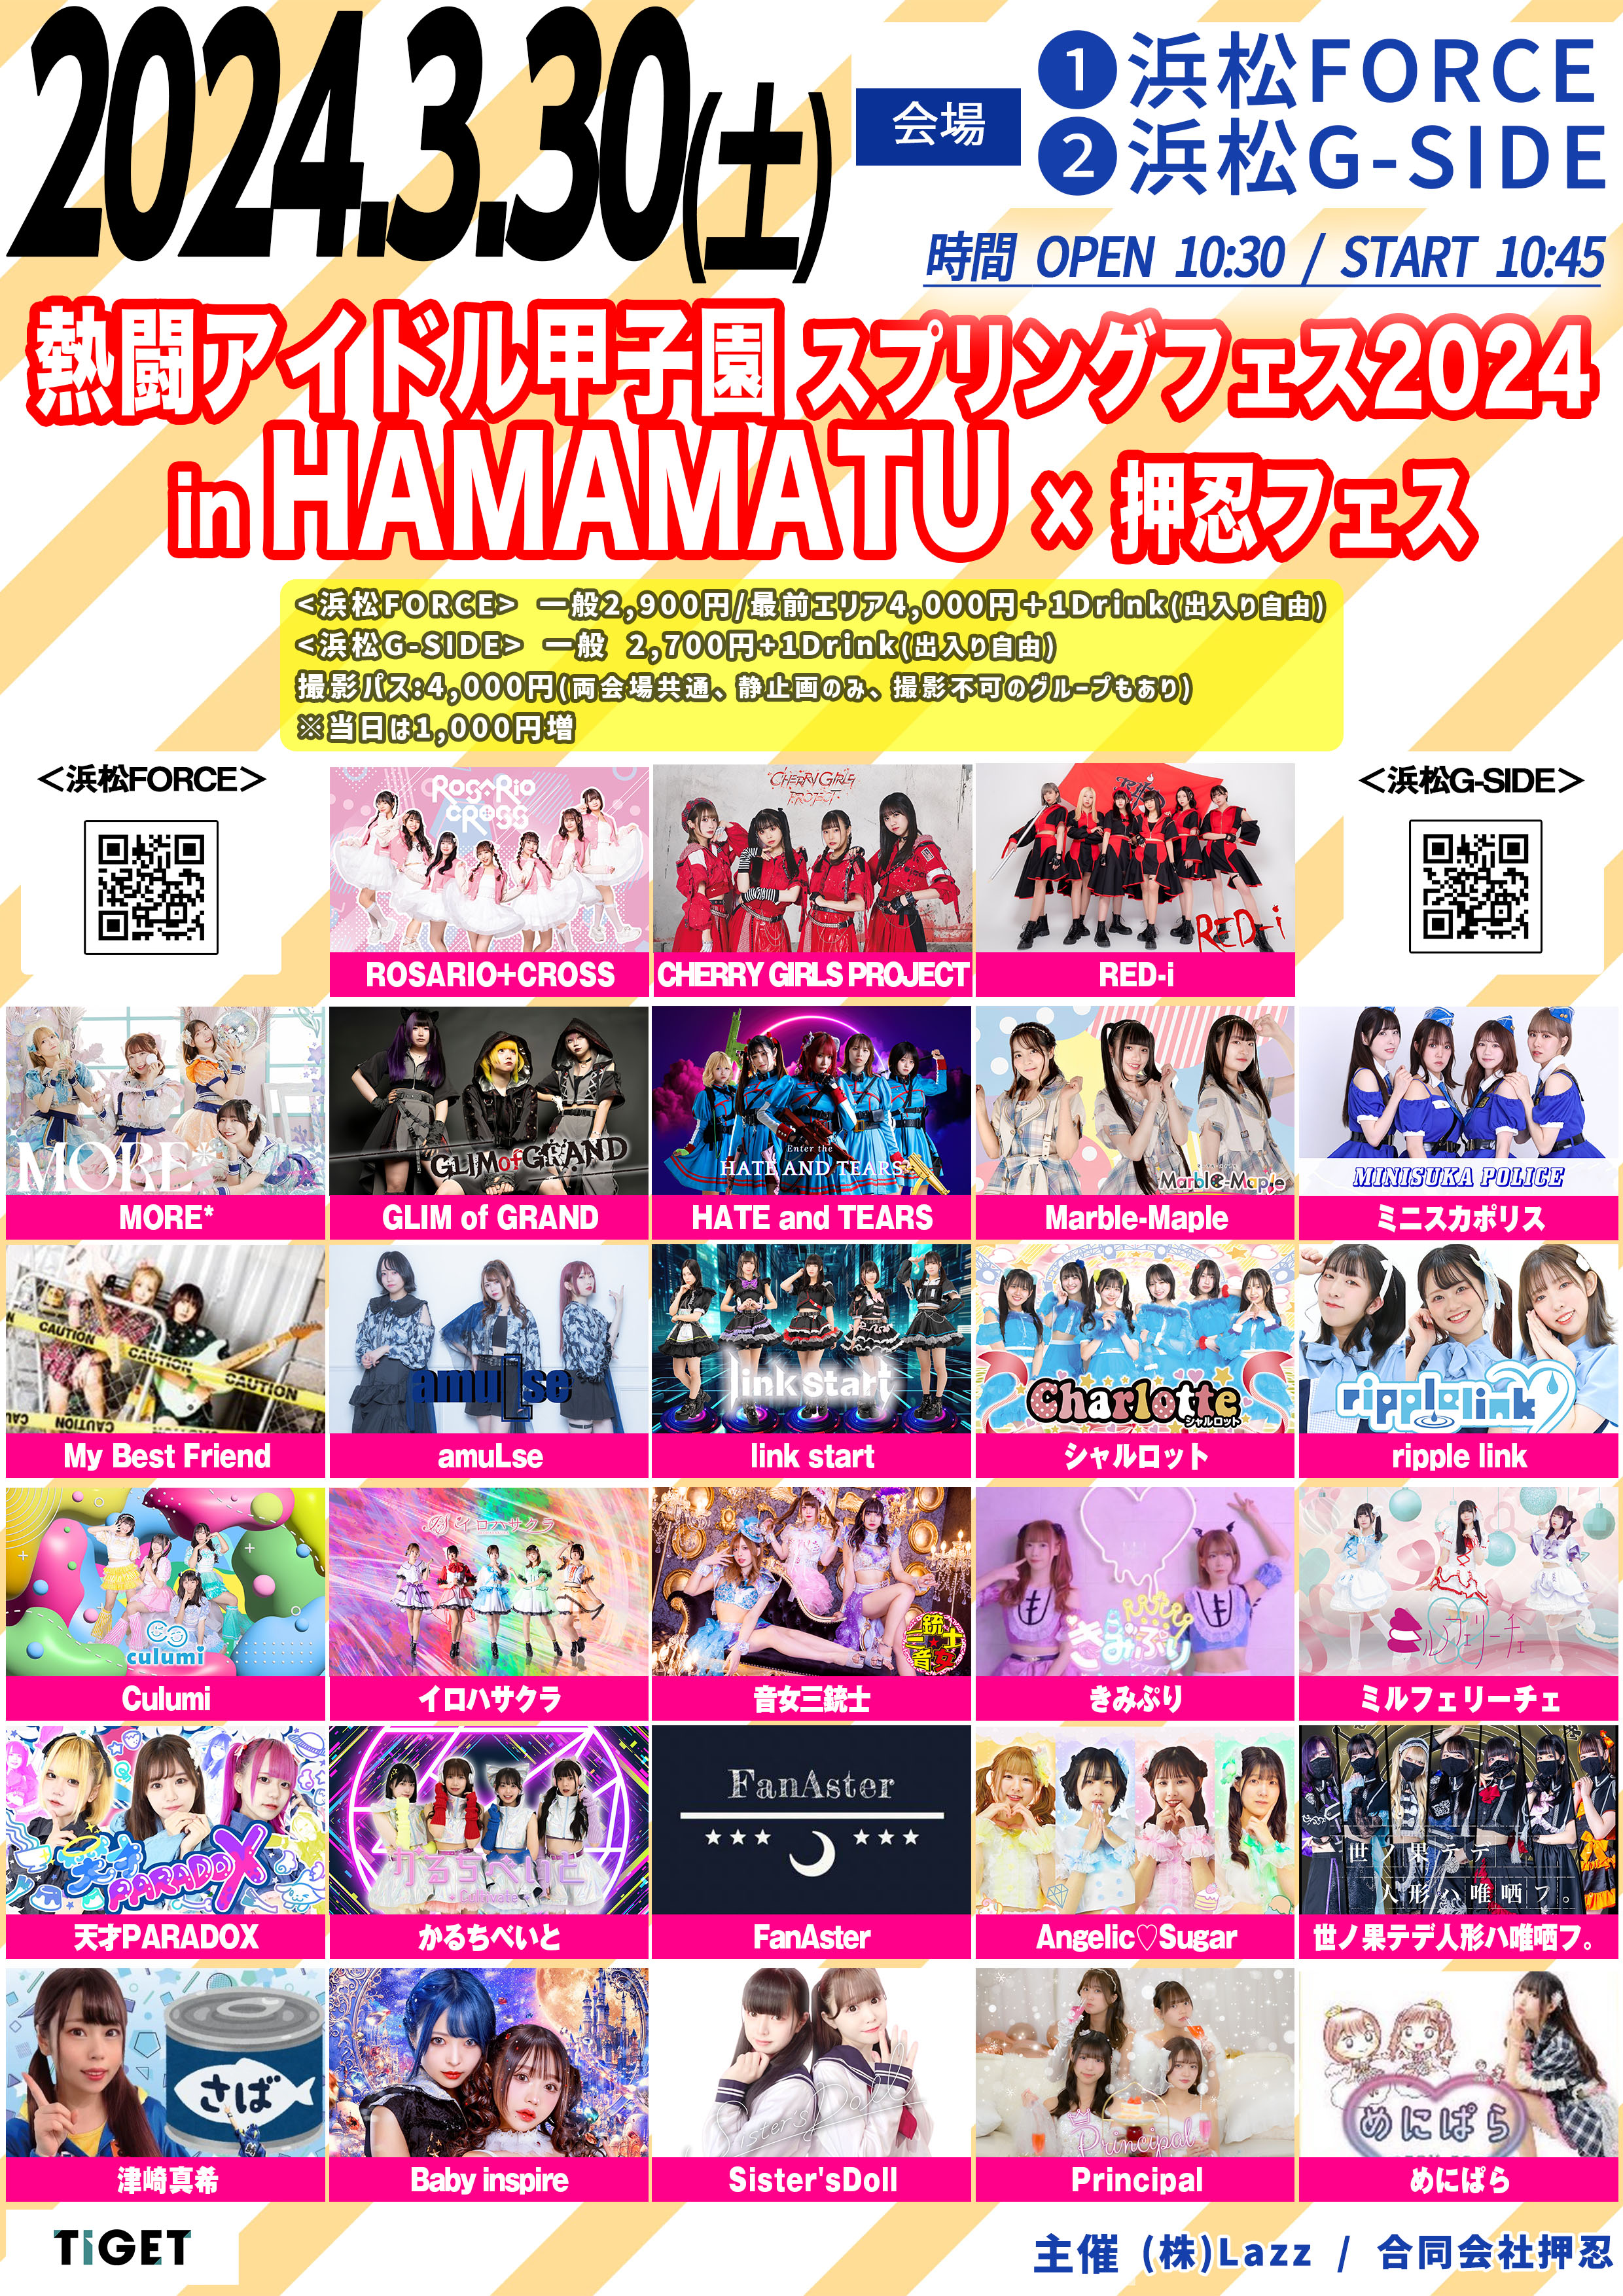 3月30日土曜日 熱闘アイドル甲子園スプリングフェス2024 in HAMAMATU × 押忍フェス